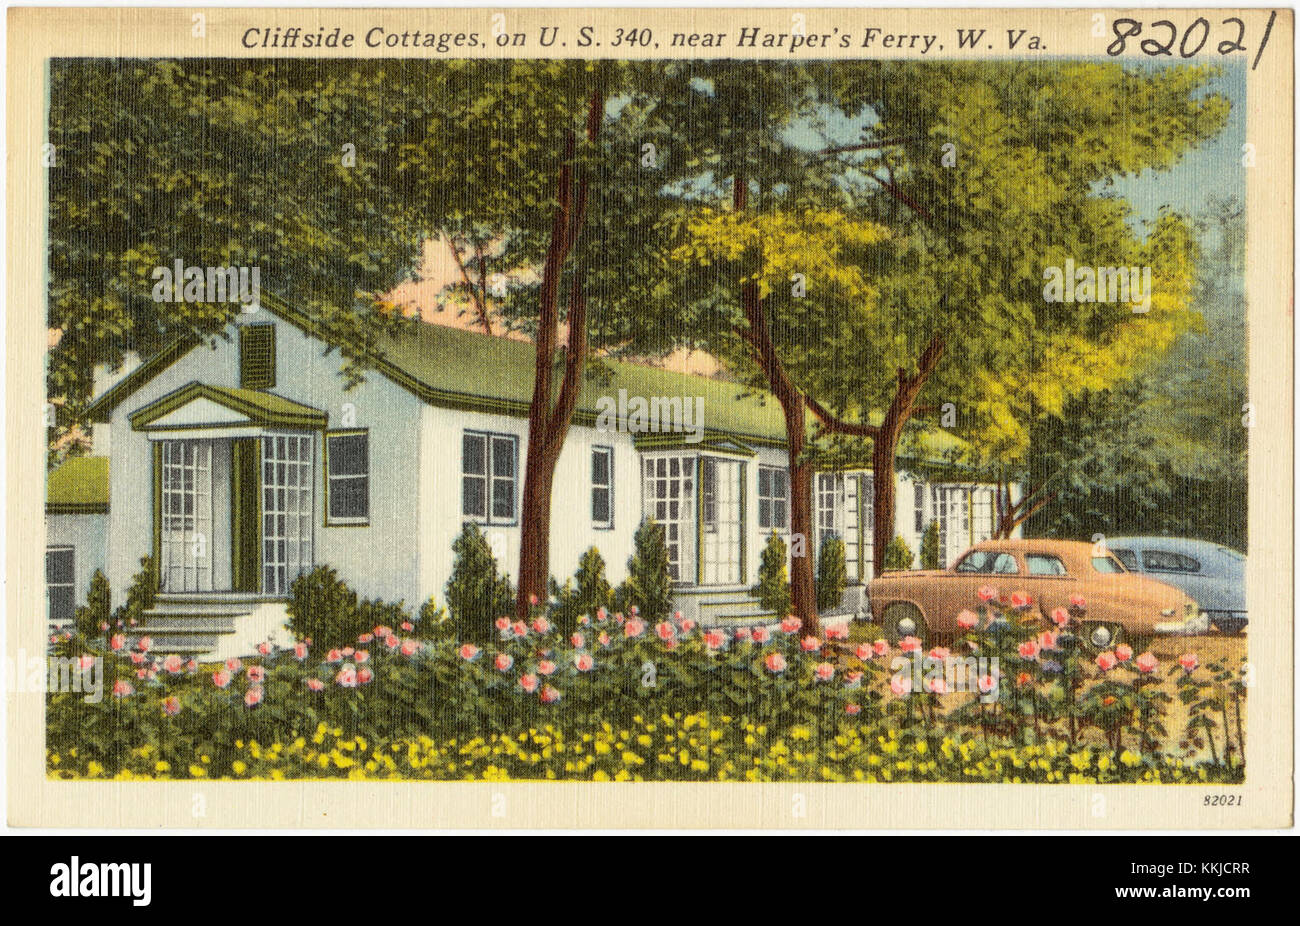 Cliffside Cottages, an der U.S. 340, in der Nähe von Harper's Ferry, W. VA (82021) Stockfoto